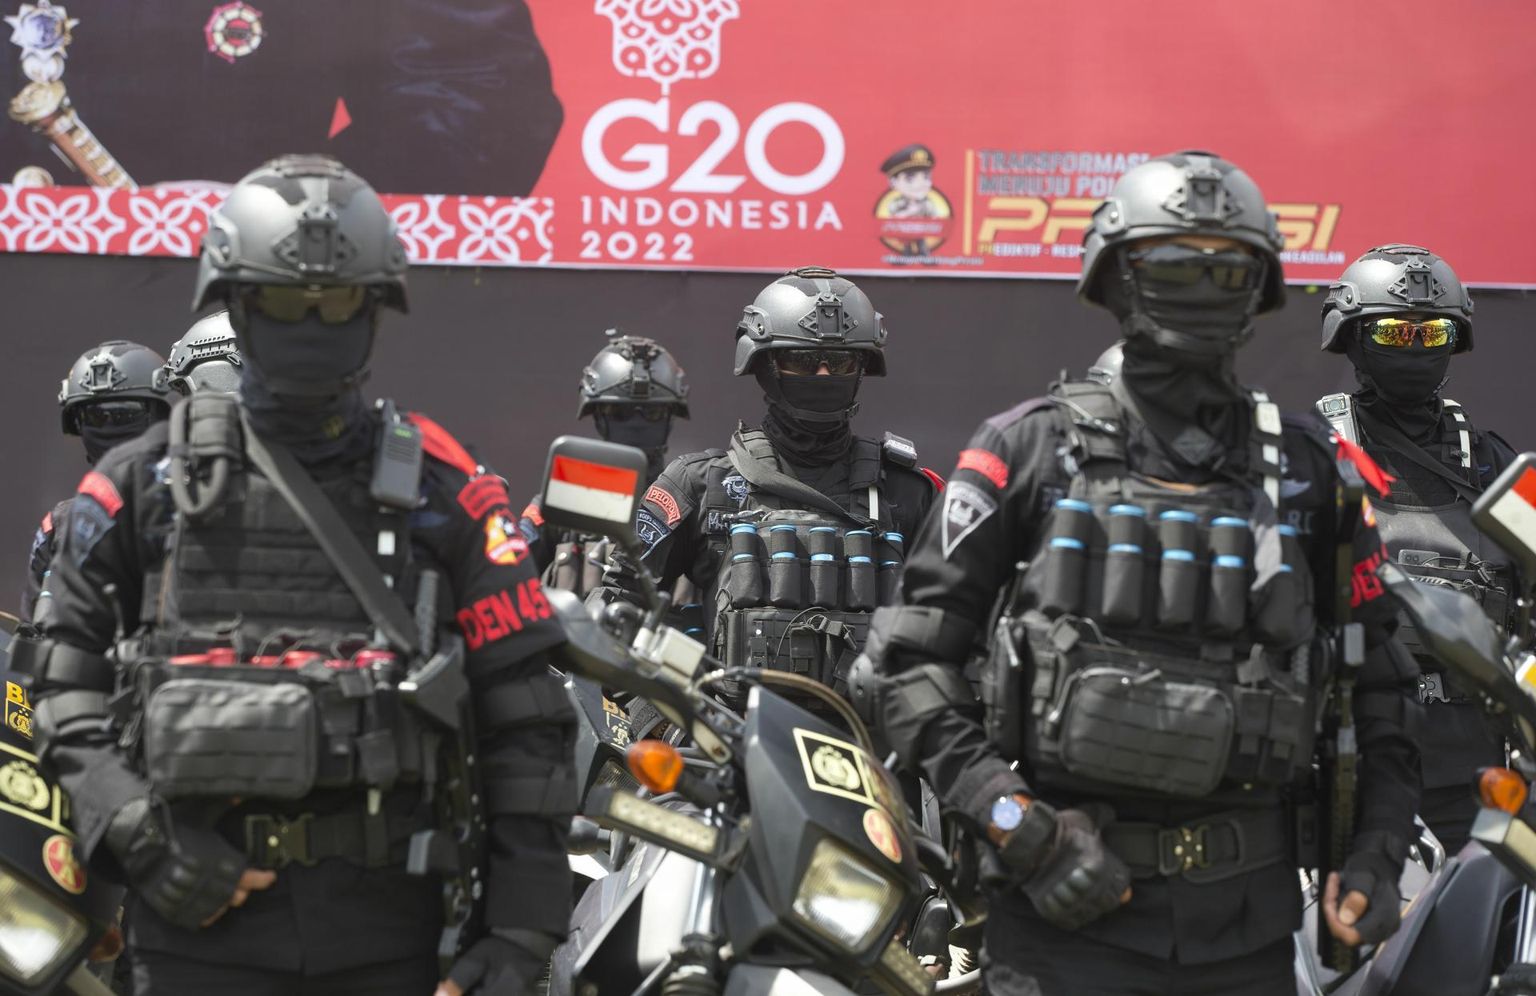 Indoneesia politsei eriüksuse liikmed valmistuvad sel nädalal peatseks G20 tippkohtumiseks Bali saarel. 